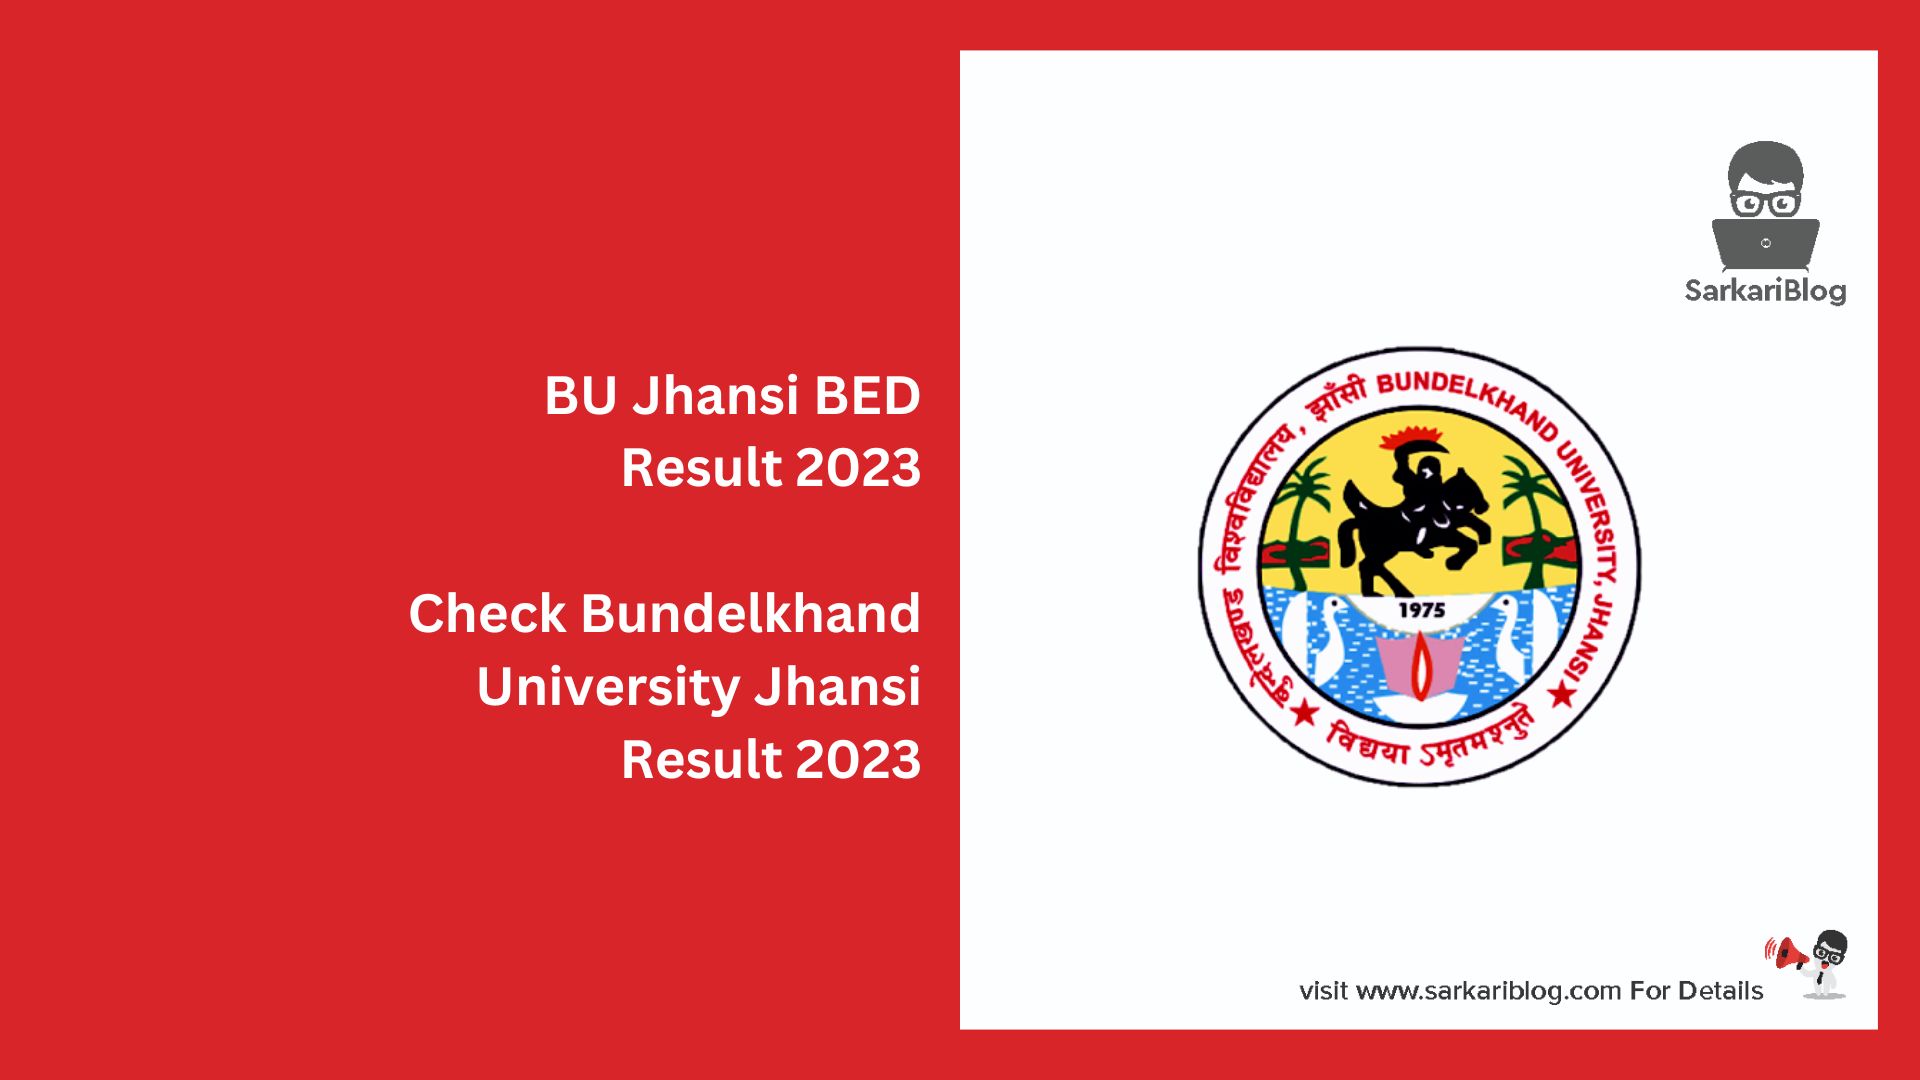 BU Jhansi BED Result 2023